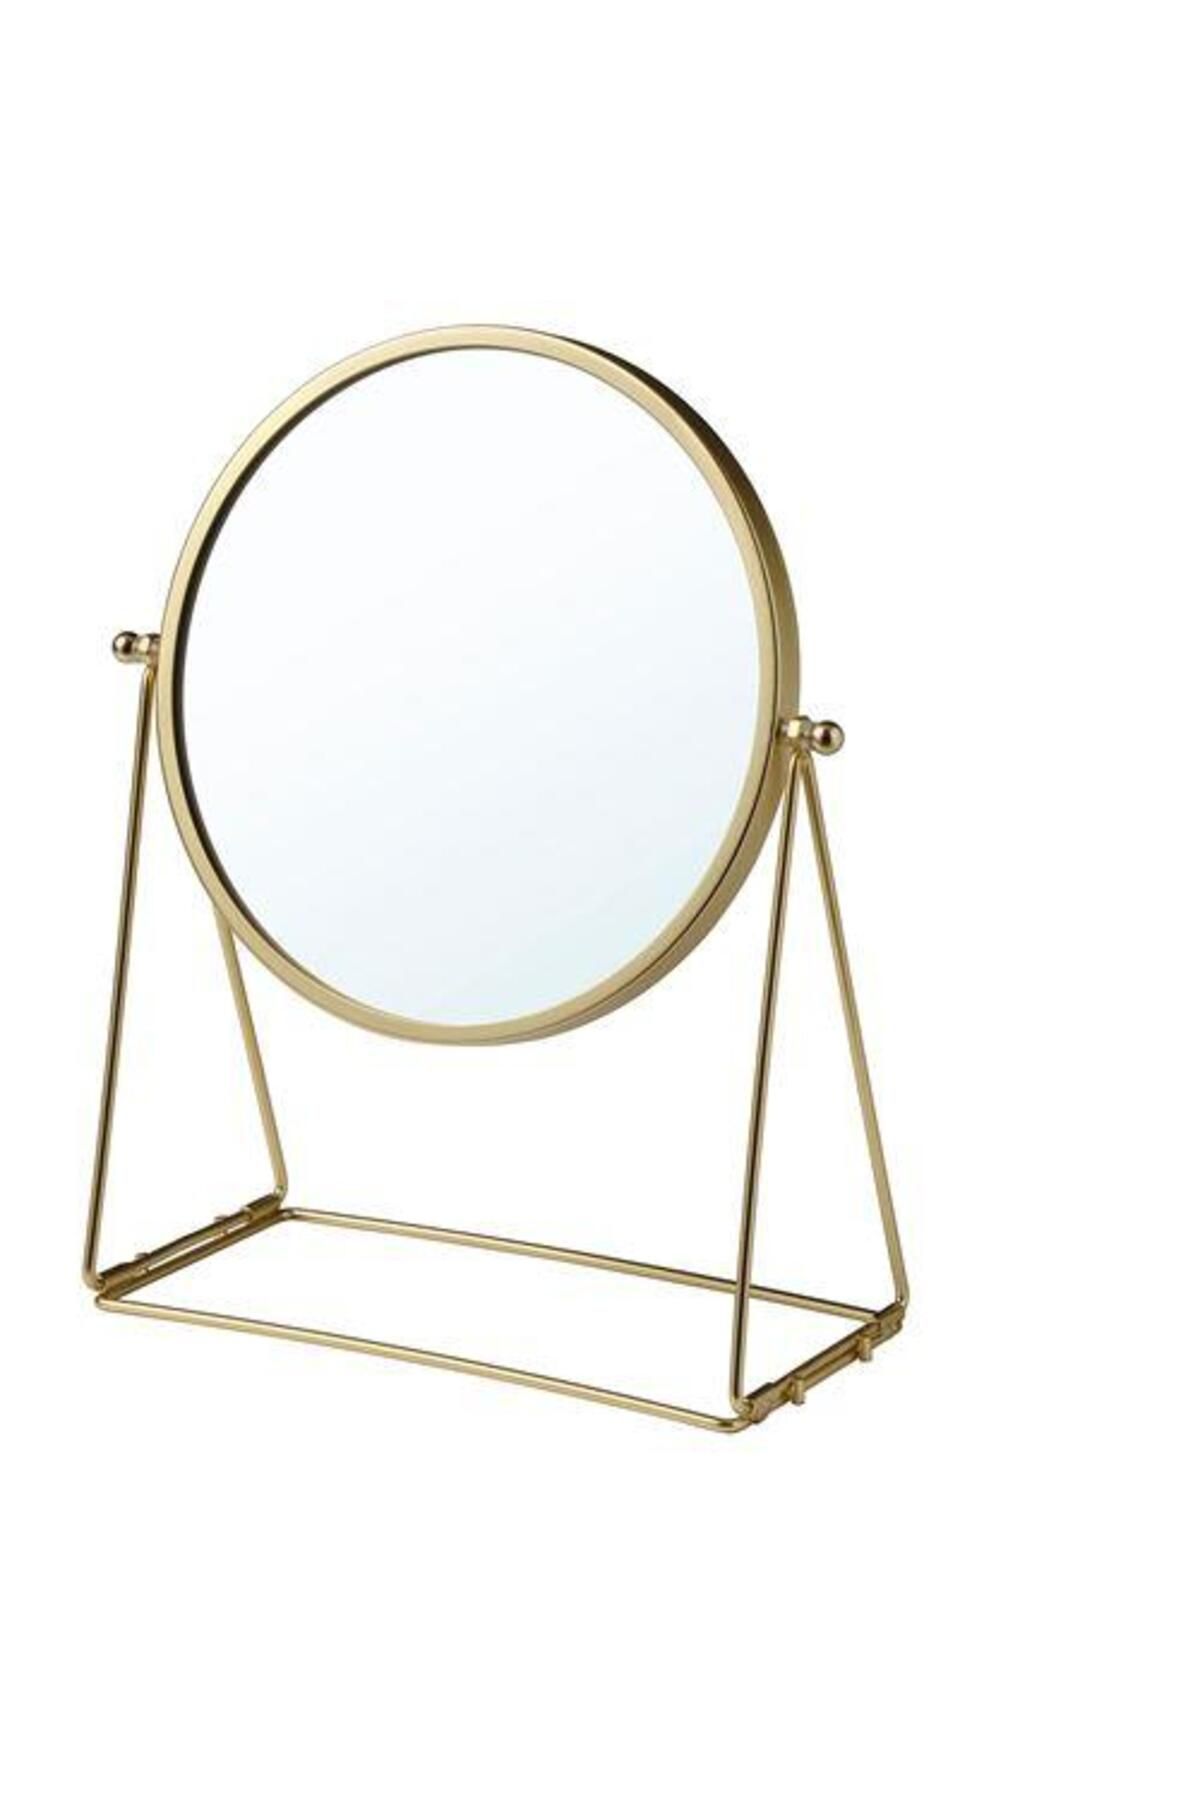 IKEA Gold Renk Masa-makyaj Aynası, Meridyendukkan Altın Rengi Yuvarlak-17 Cm-büyüteçli Ayna